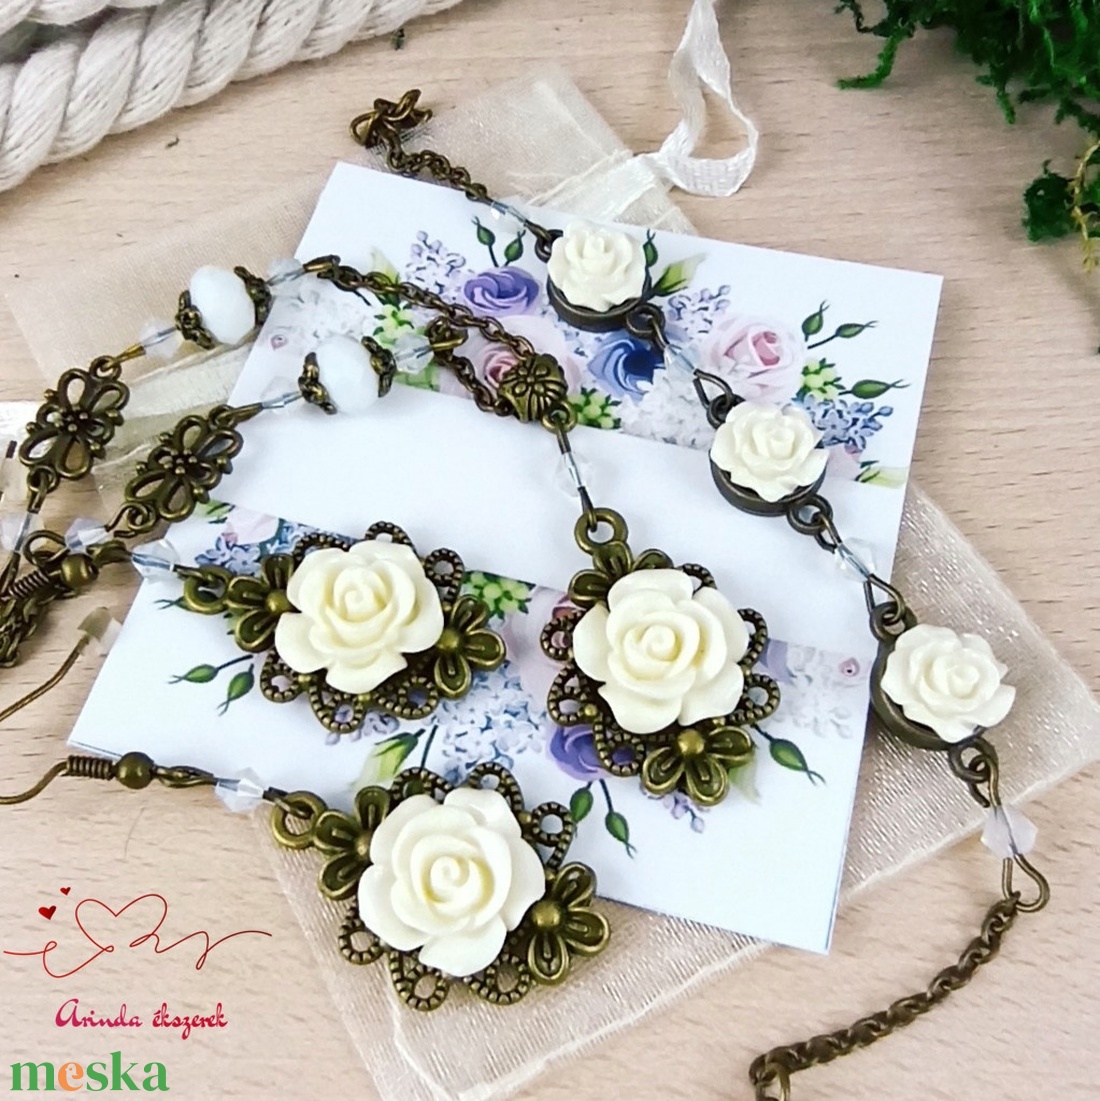 #24 fehér rózsás szett nyaklánc fülbevaló karkötő vintage esküvő alkalmi koszorúslány örömanya menyasszony násznagy - ékszer - ékszerszett - Meska.hu